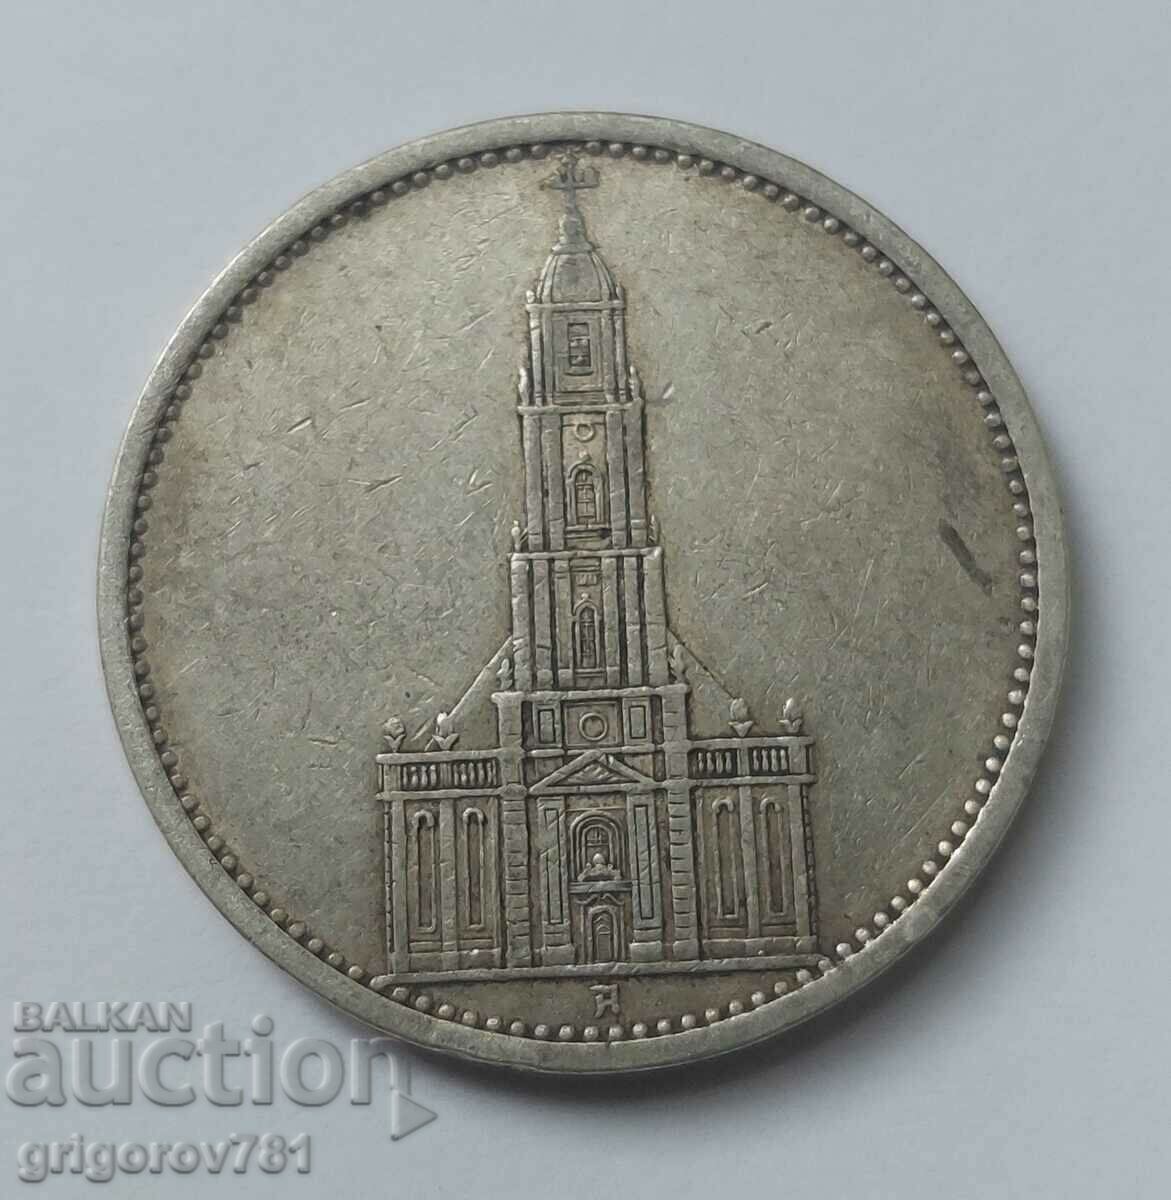 5 Mark Silver Γερμανία 1935 A III Reich Silver Coin #14